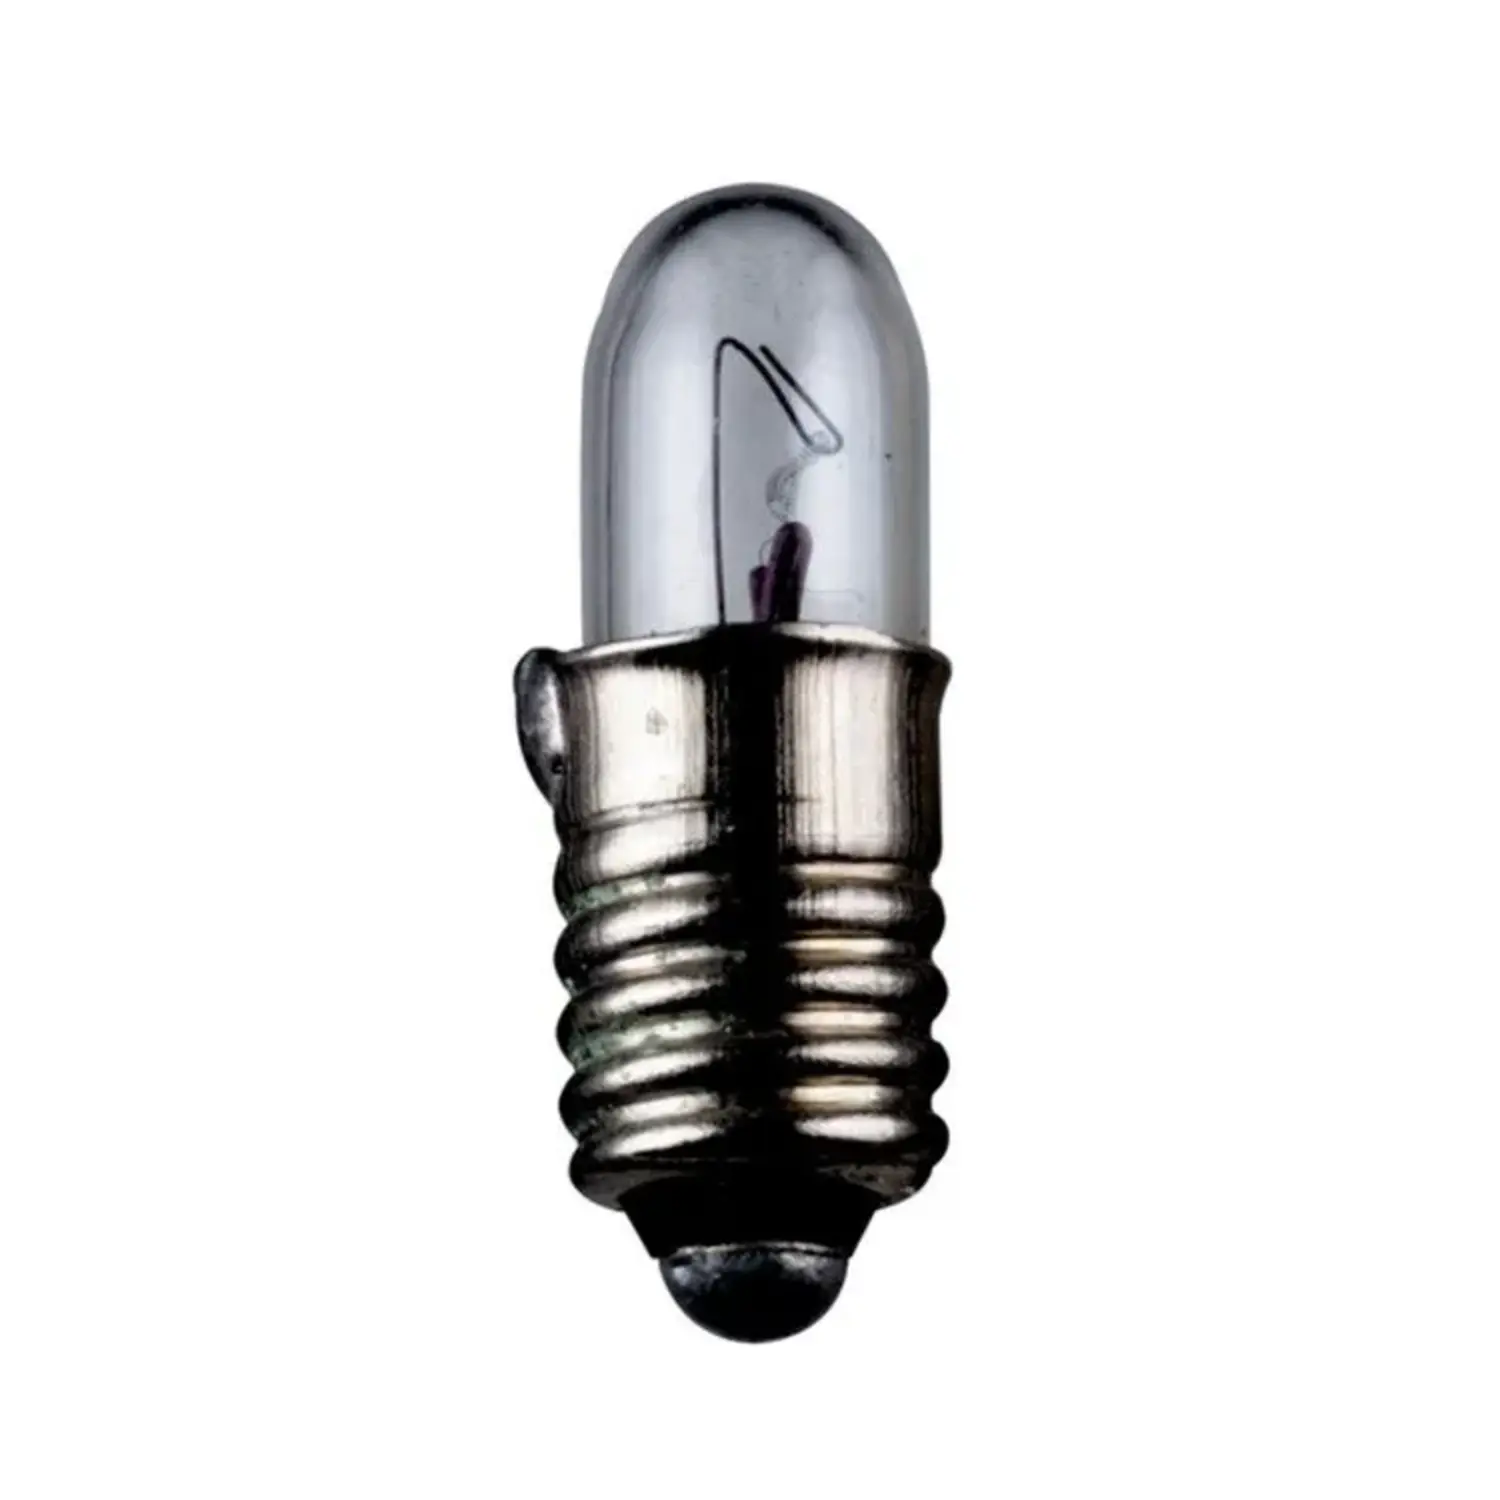 immagine del prodotto lampadina in miniatura modellismo presepe luci natale e5.5 0,60 watt 12 volt